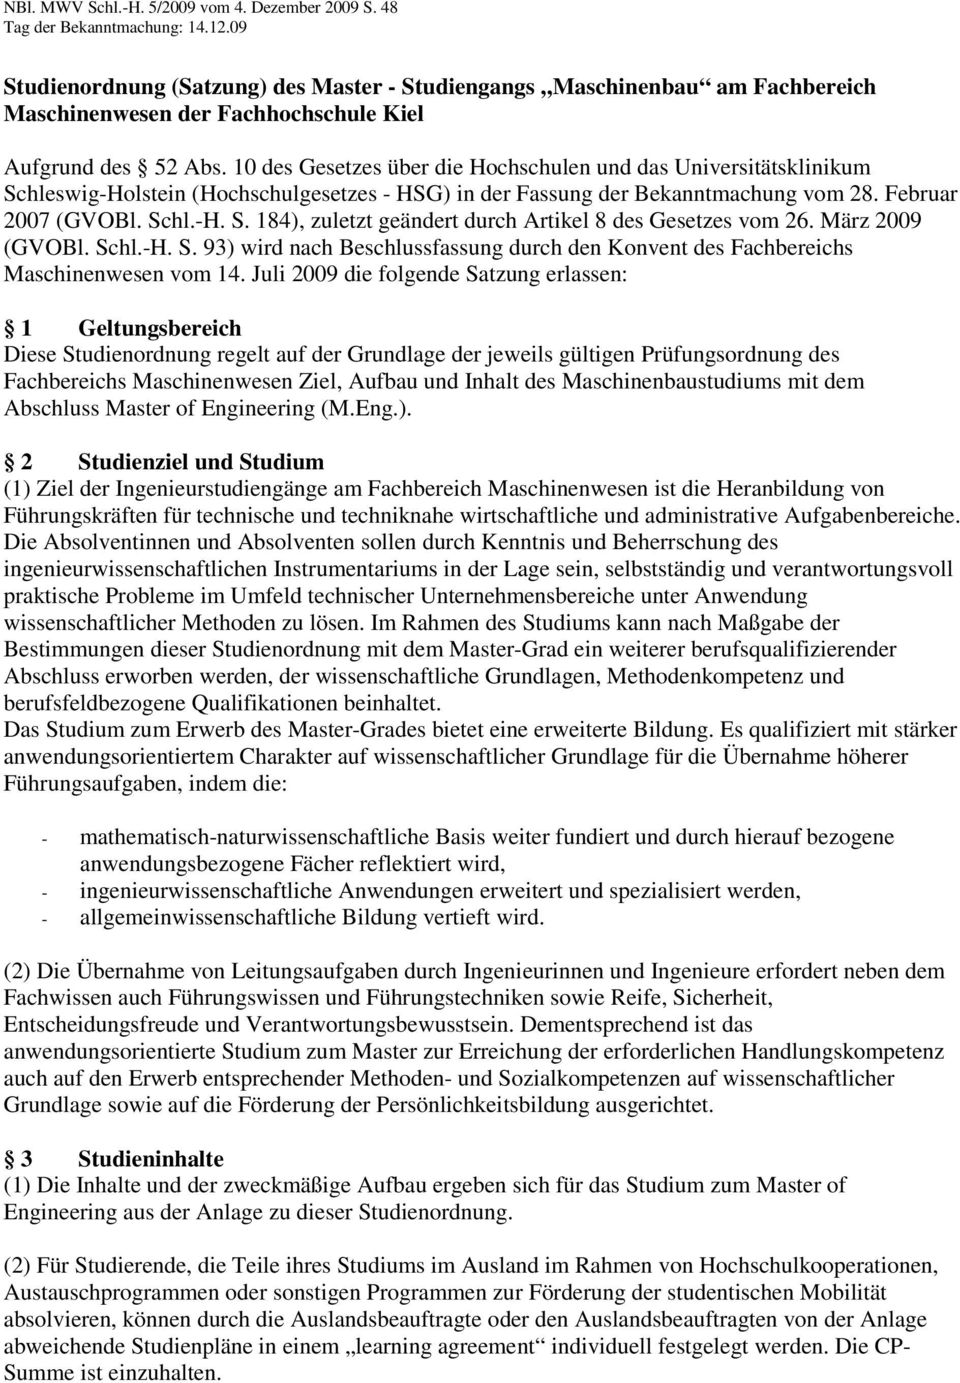 März 2009 (GVOBl. Schl.-H. S. 93) wird nach Beschlussfassung durch den Konvent des Fachbereichs Maschinenwesen vom 14.